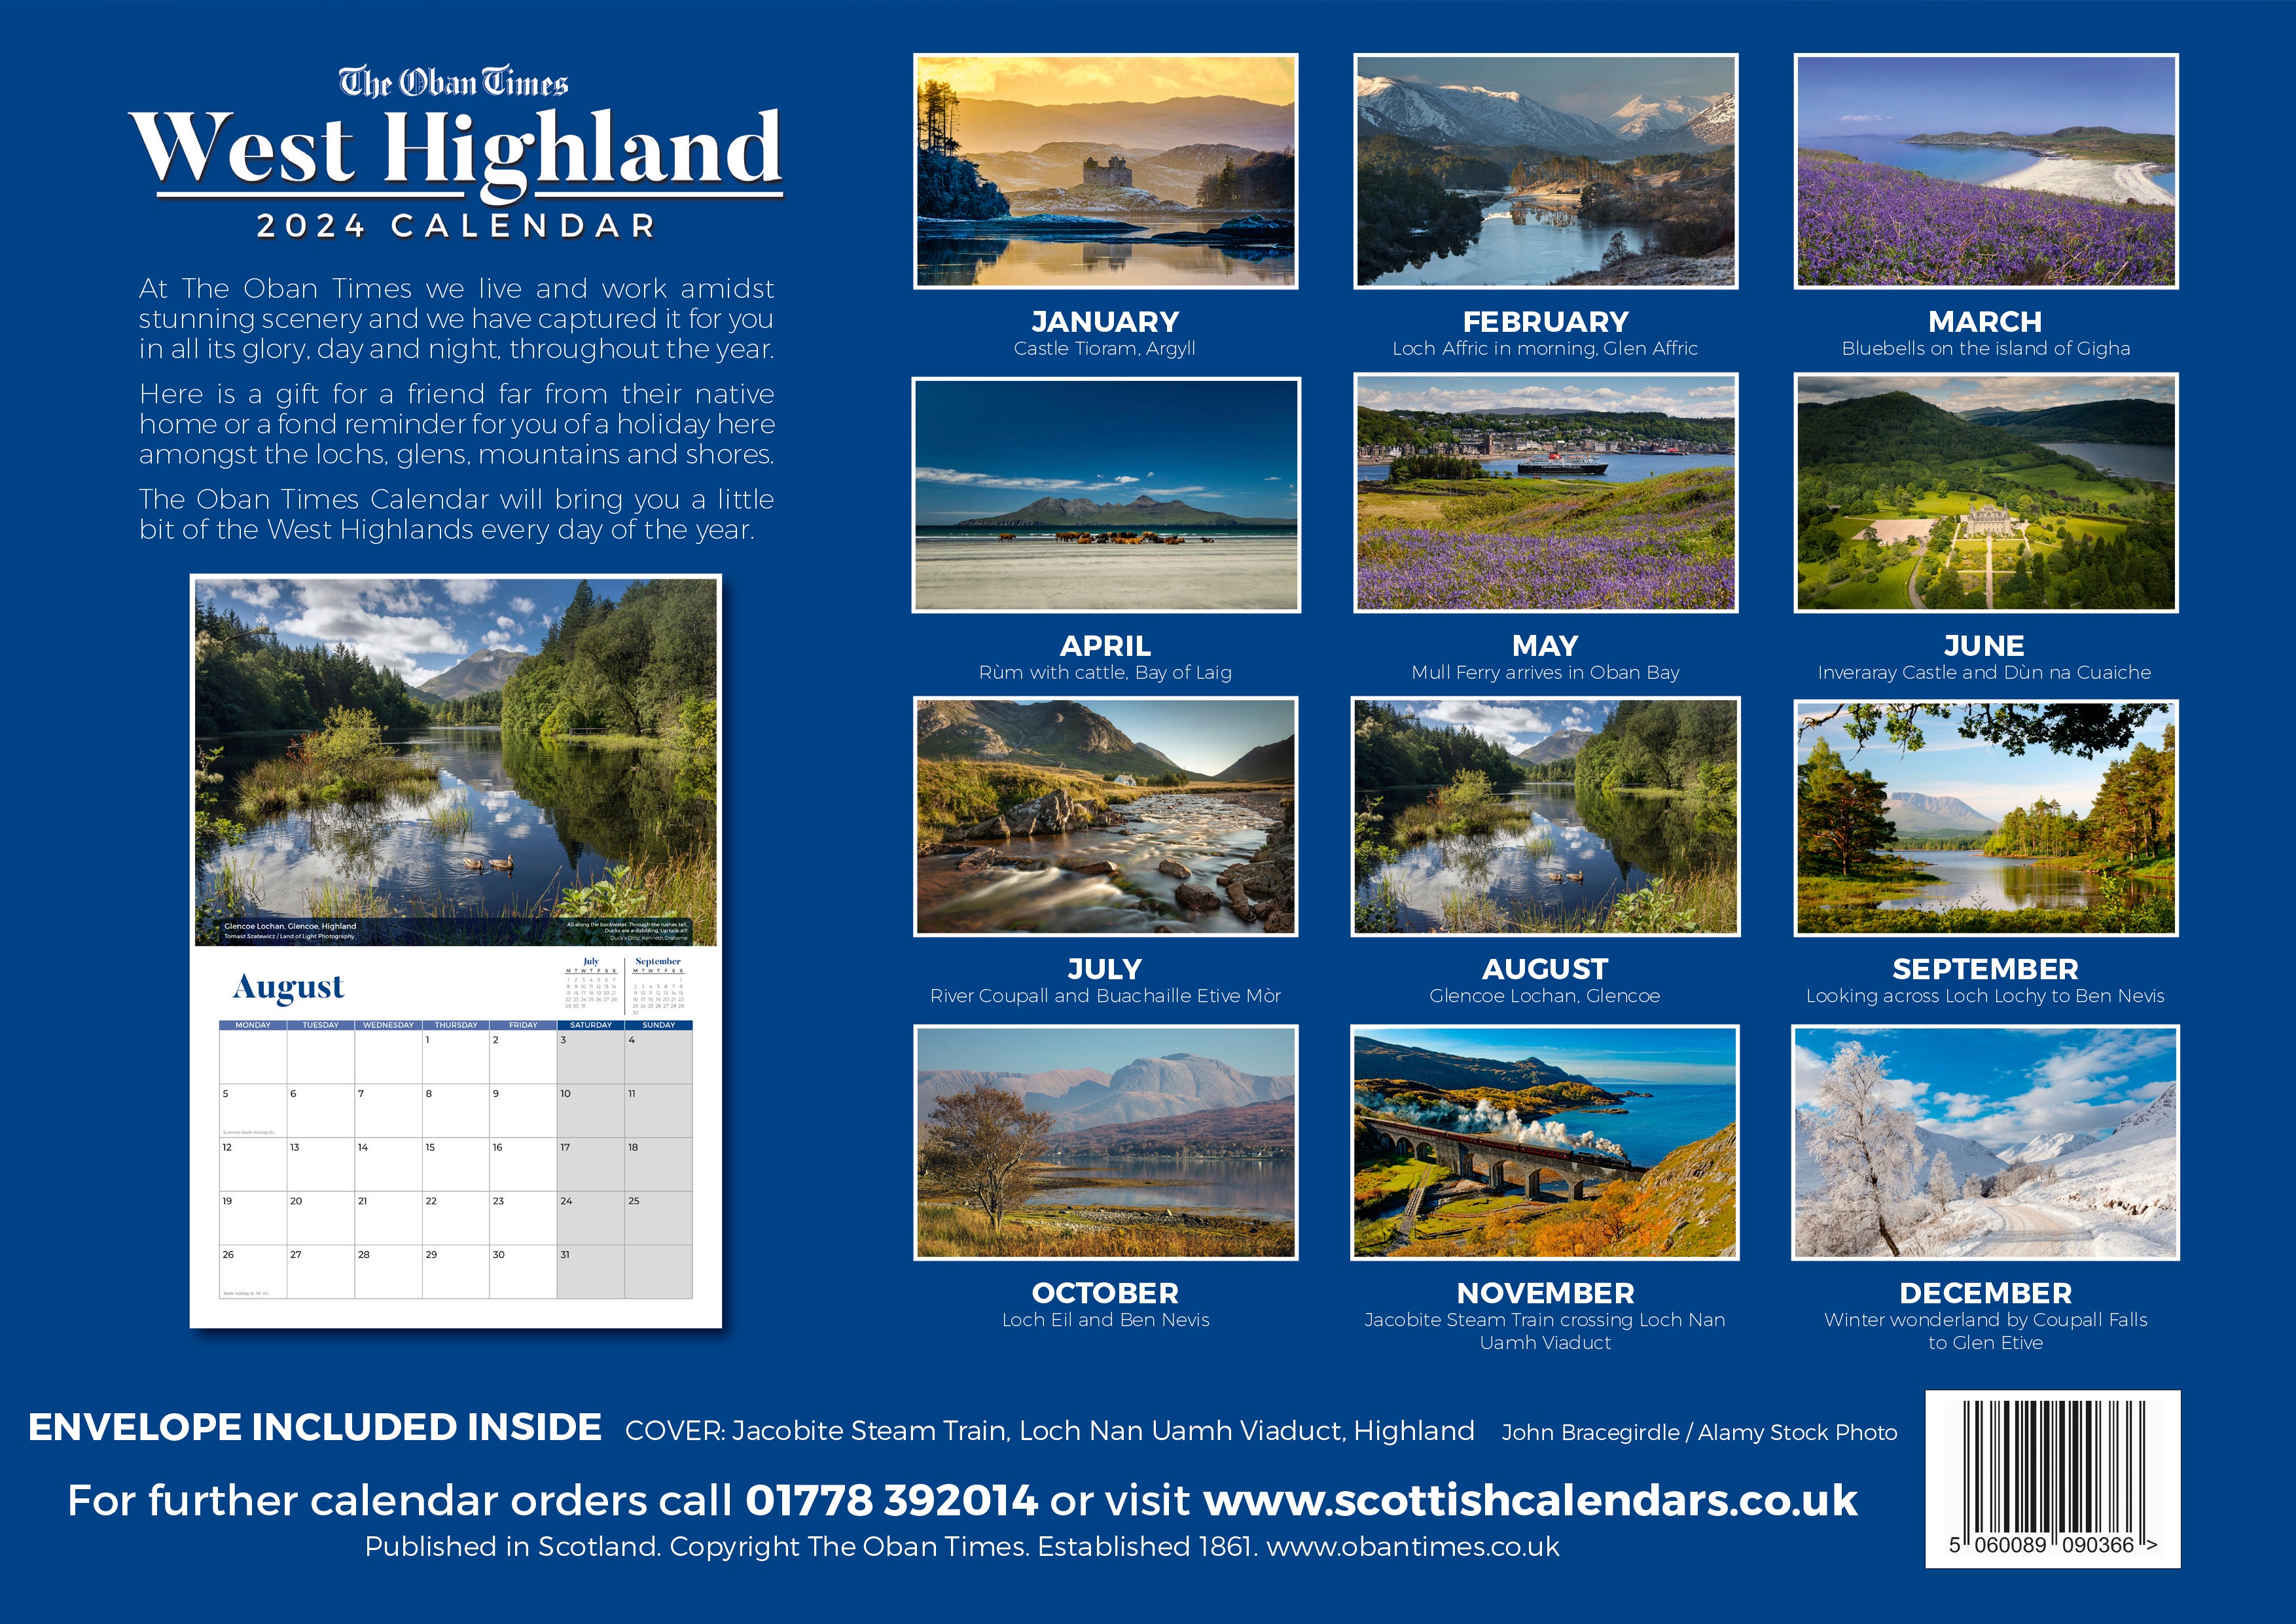 Oban Times #39 West Highland Calendar 2024 50% OFF Scottish Field Shop